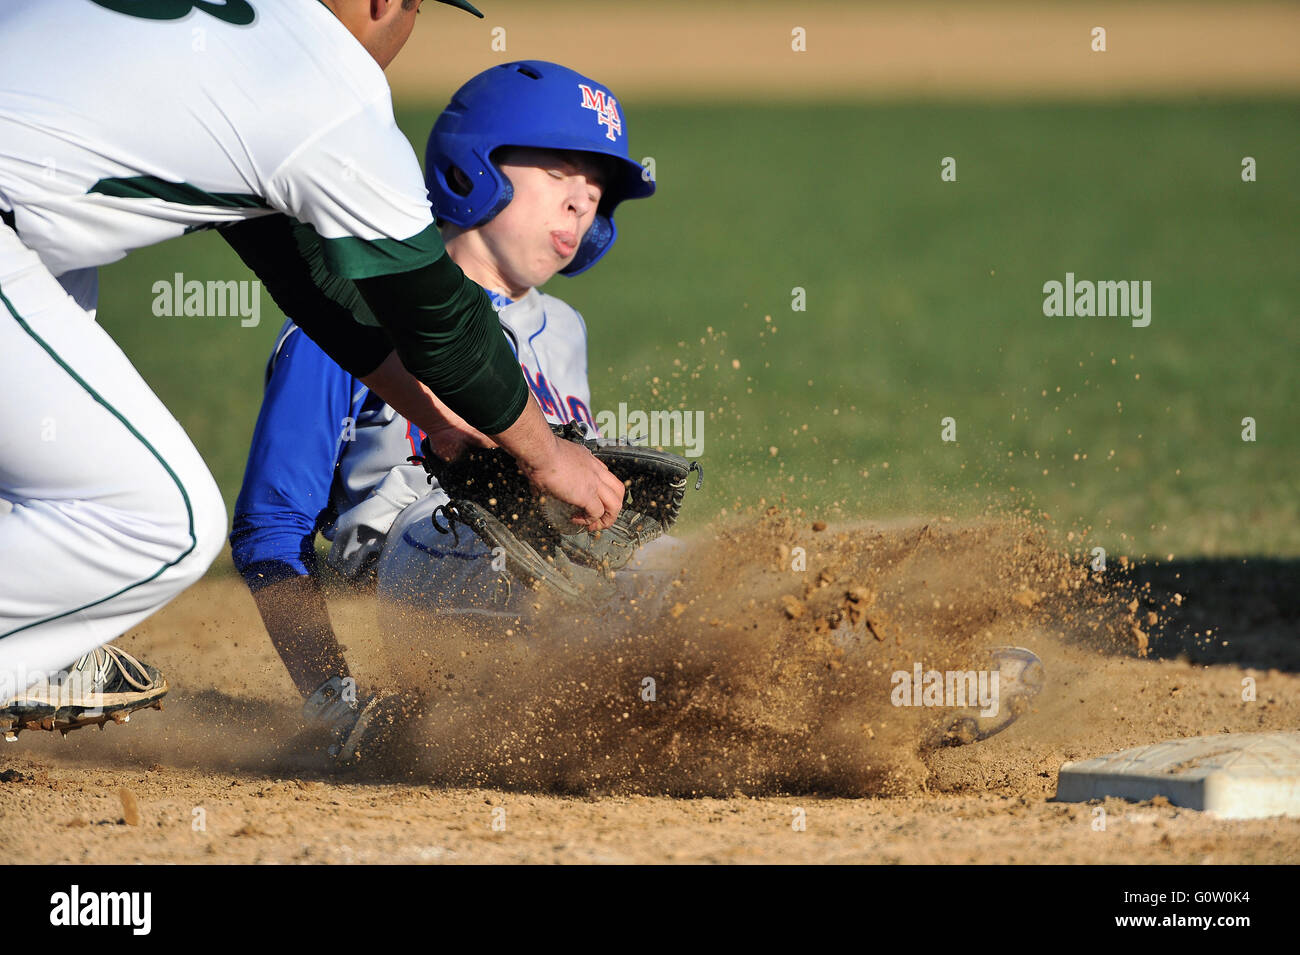 Un high school player scivolare in terza base come il terzo baseman applica un tag per il runner. Stati Uniti d'America. Foto Stock